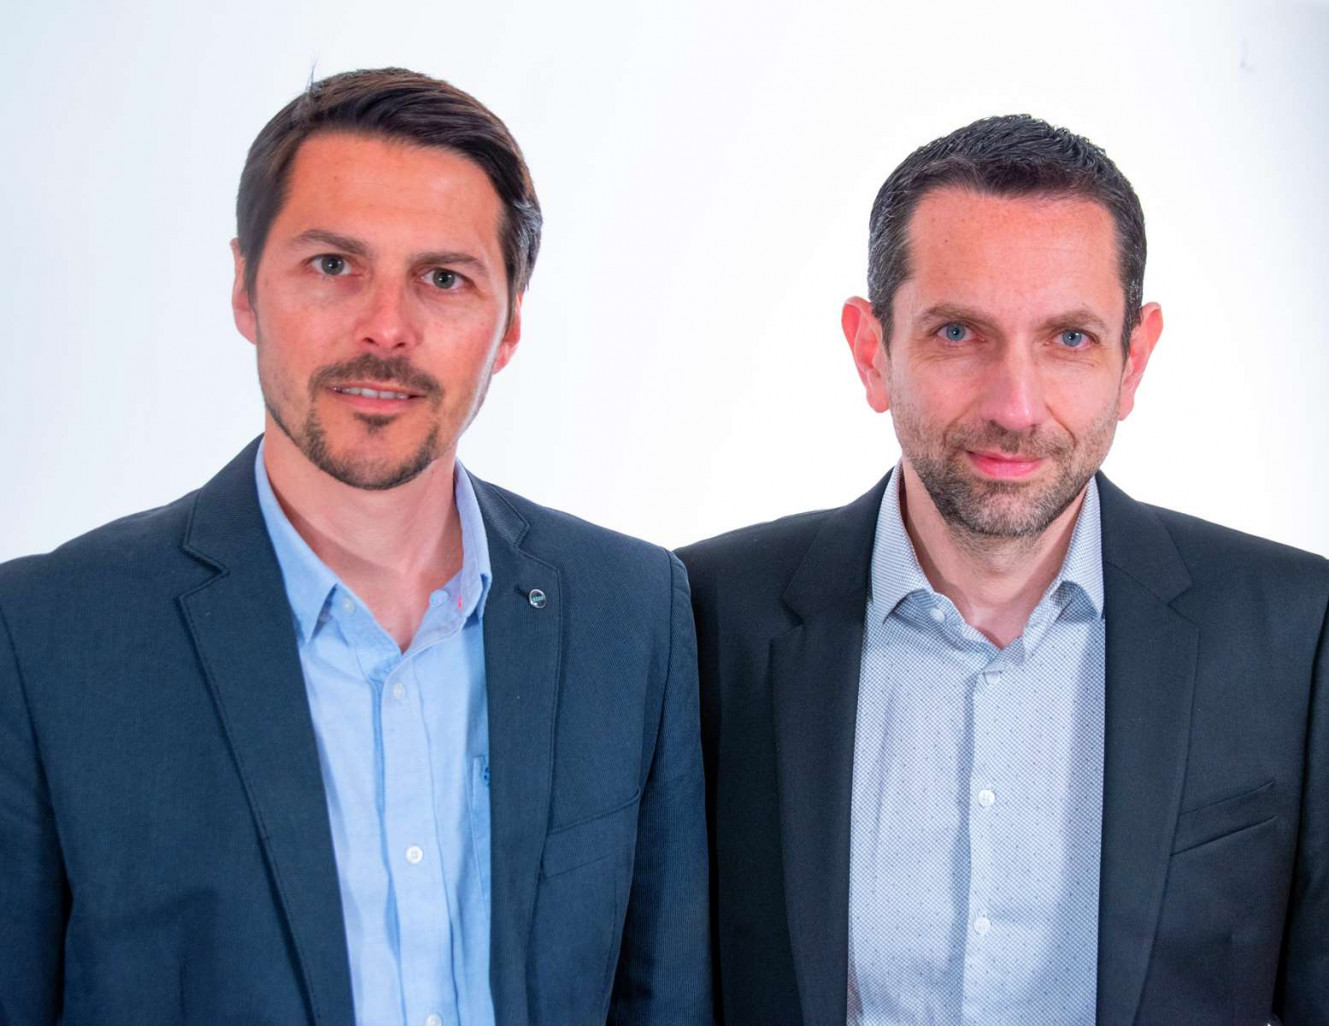 David Pruvot et Sébastien Bécuwe mettent leurs compétences en management au service des entreprises de toute taille.